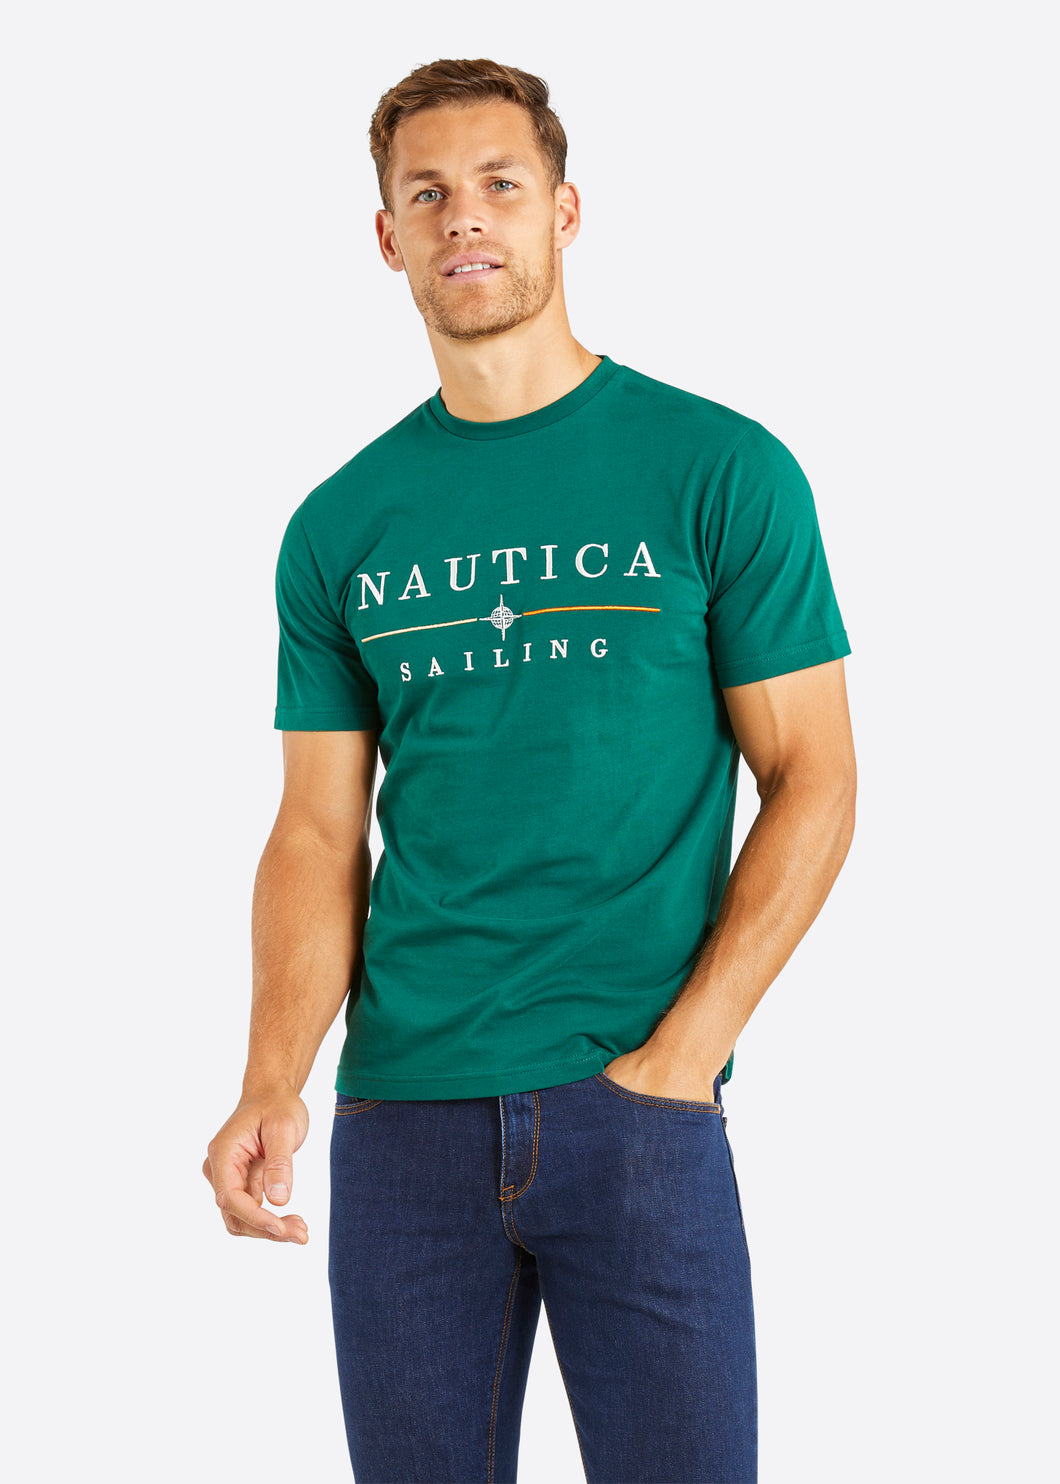 Nautica Mateo T-Shirt - Dark Green - Front